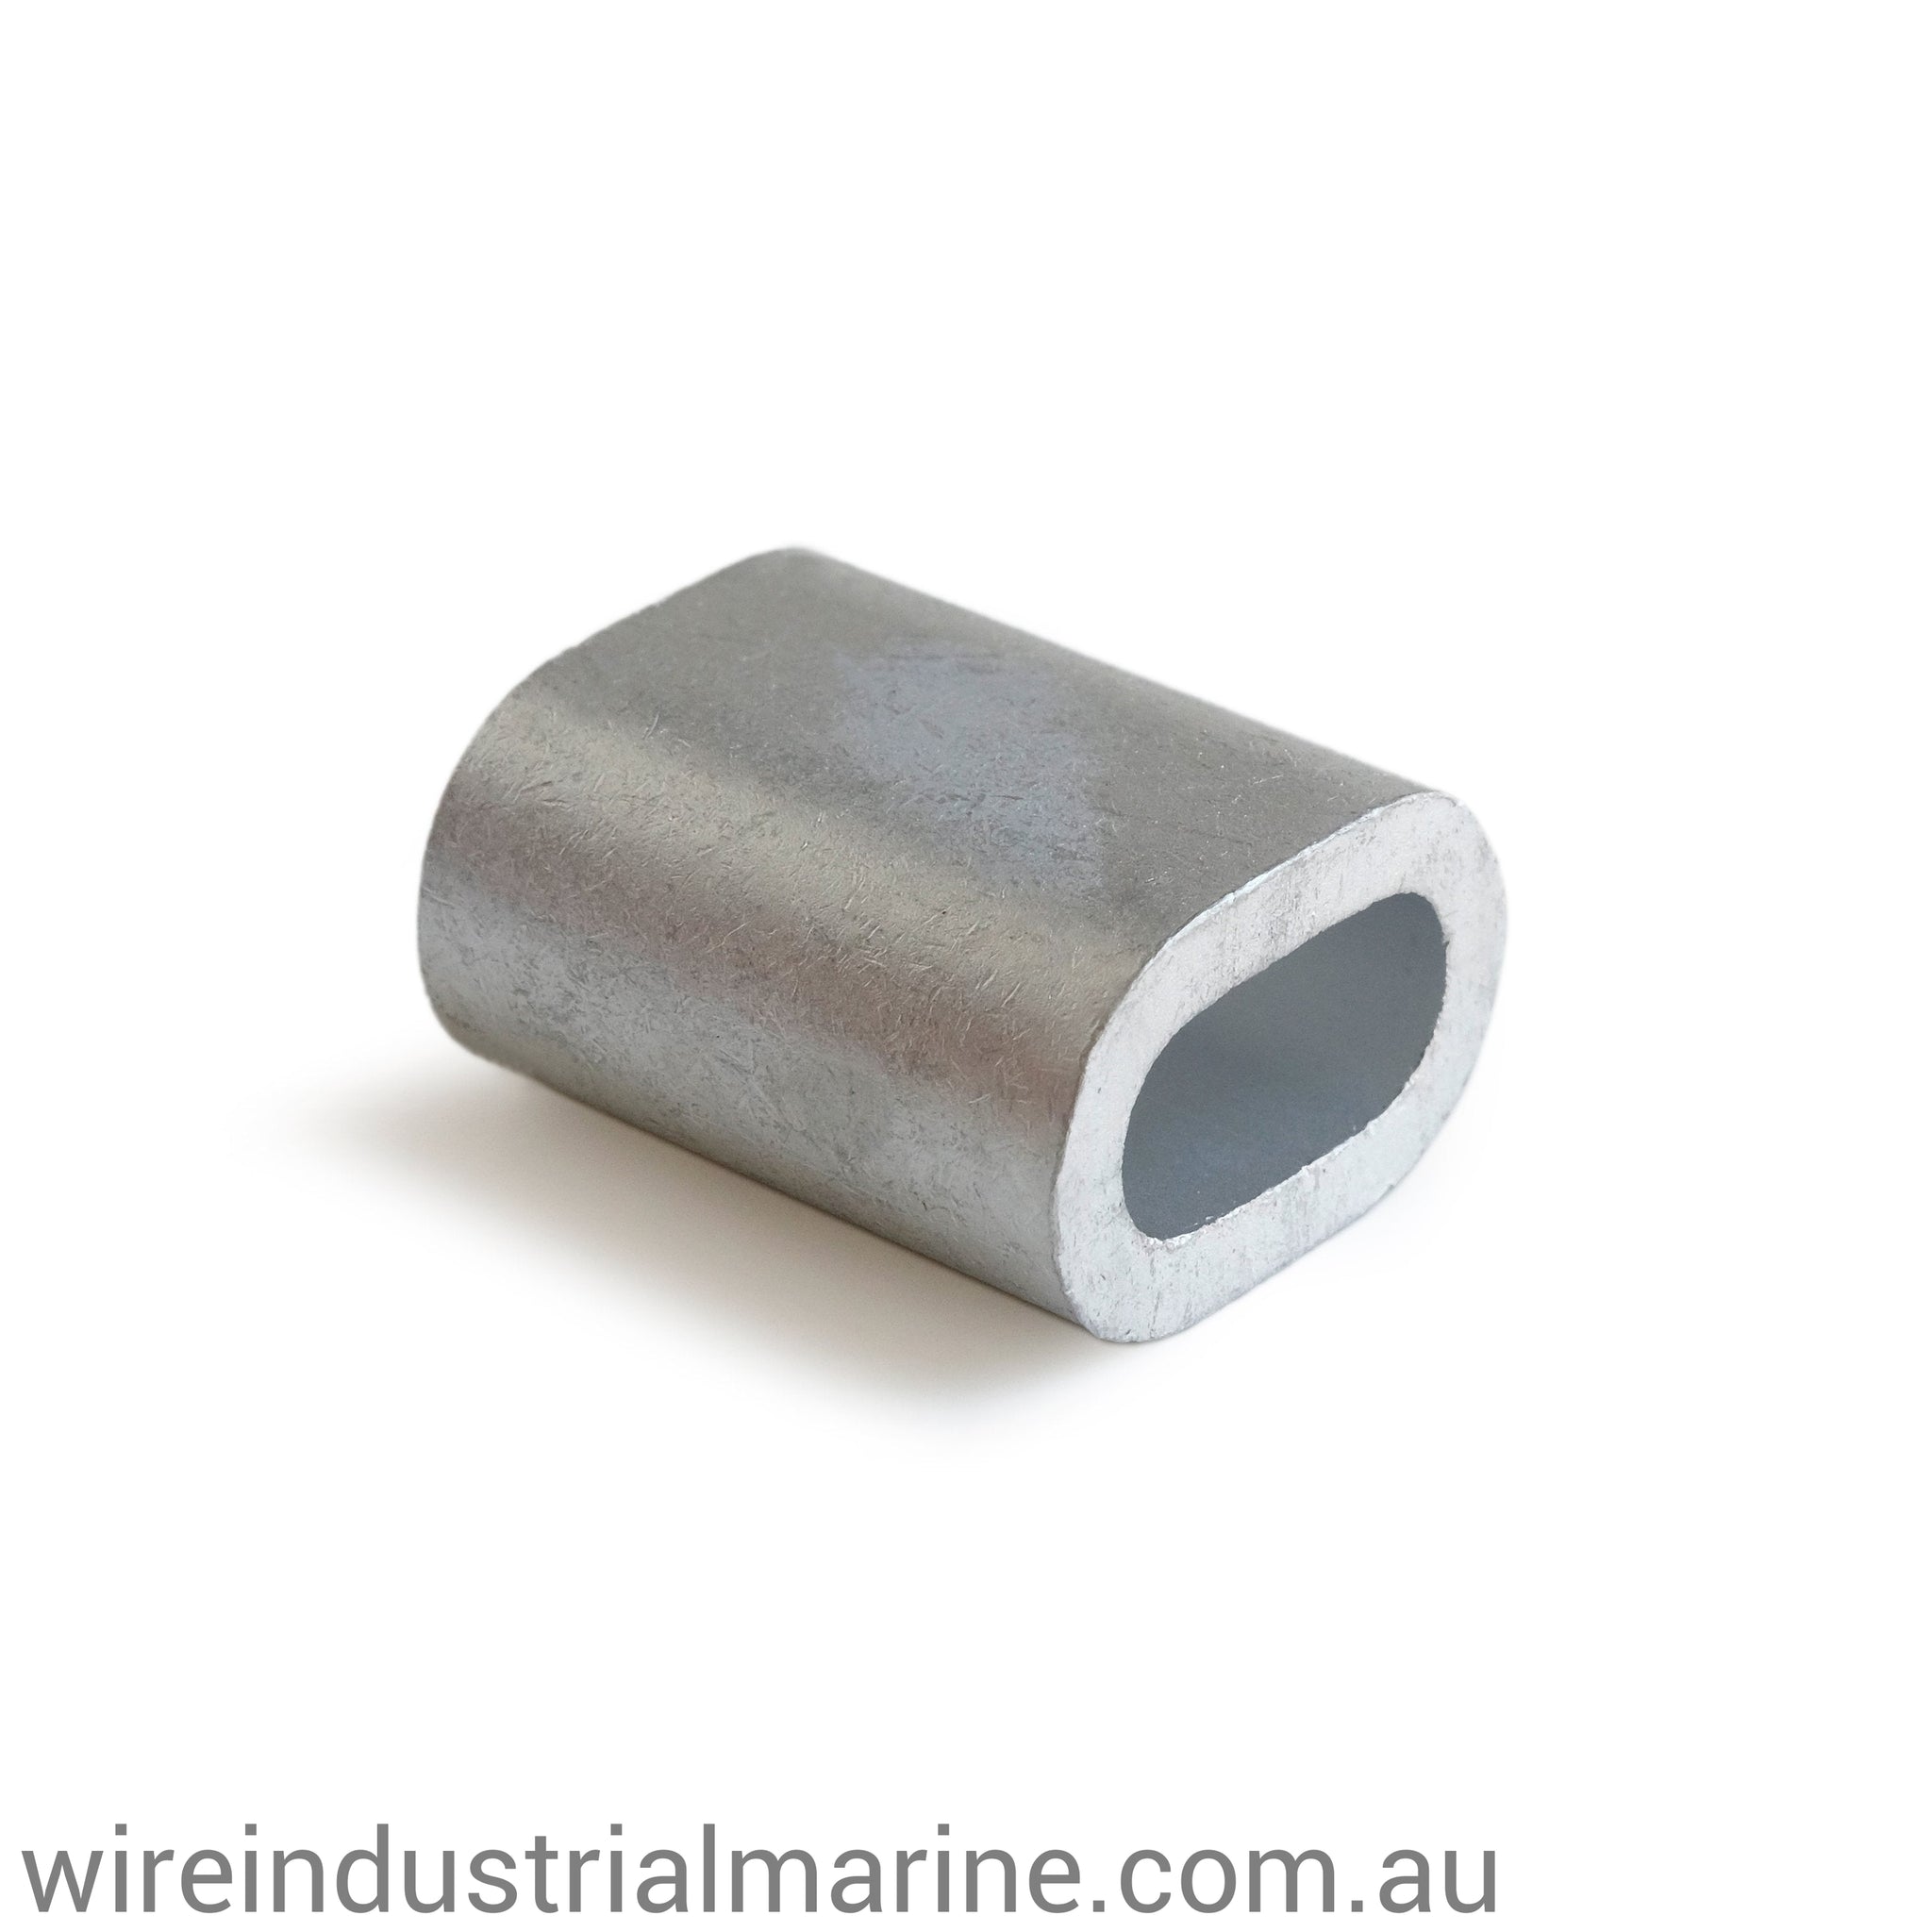 6mm ALLOY-DIN Code machine press ferrule for galvanised wire-wireindustrialmarine